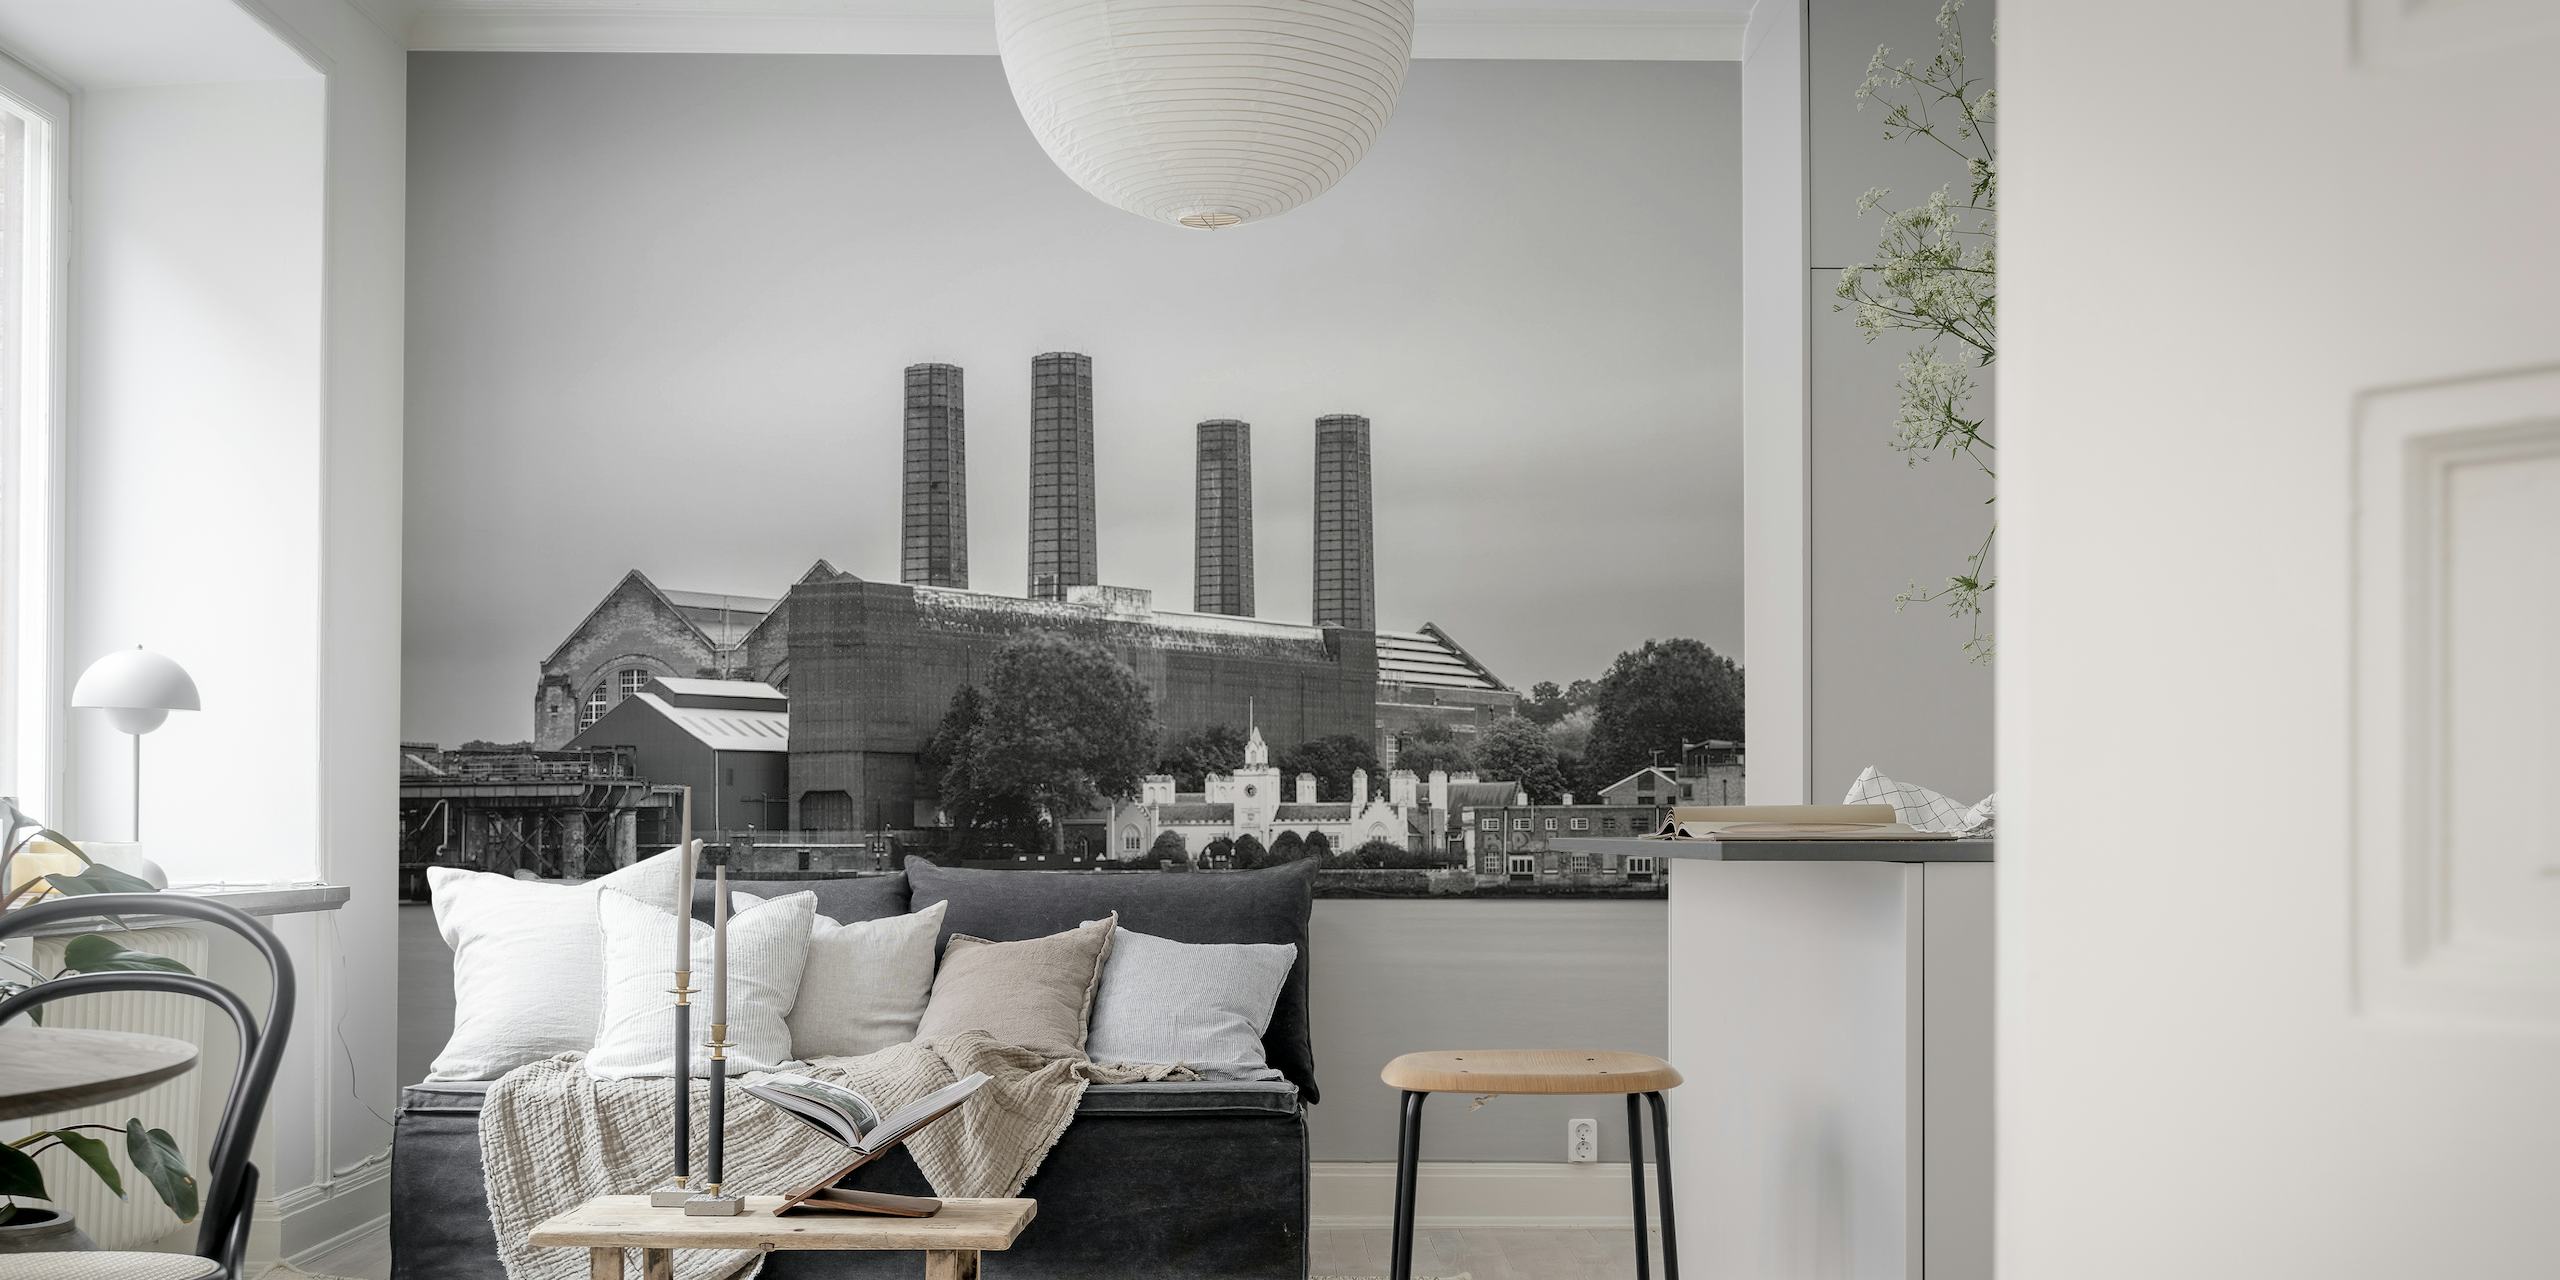 Zwart-wit fotobehang van Greenwich Power Station met een klassieke industriële look